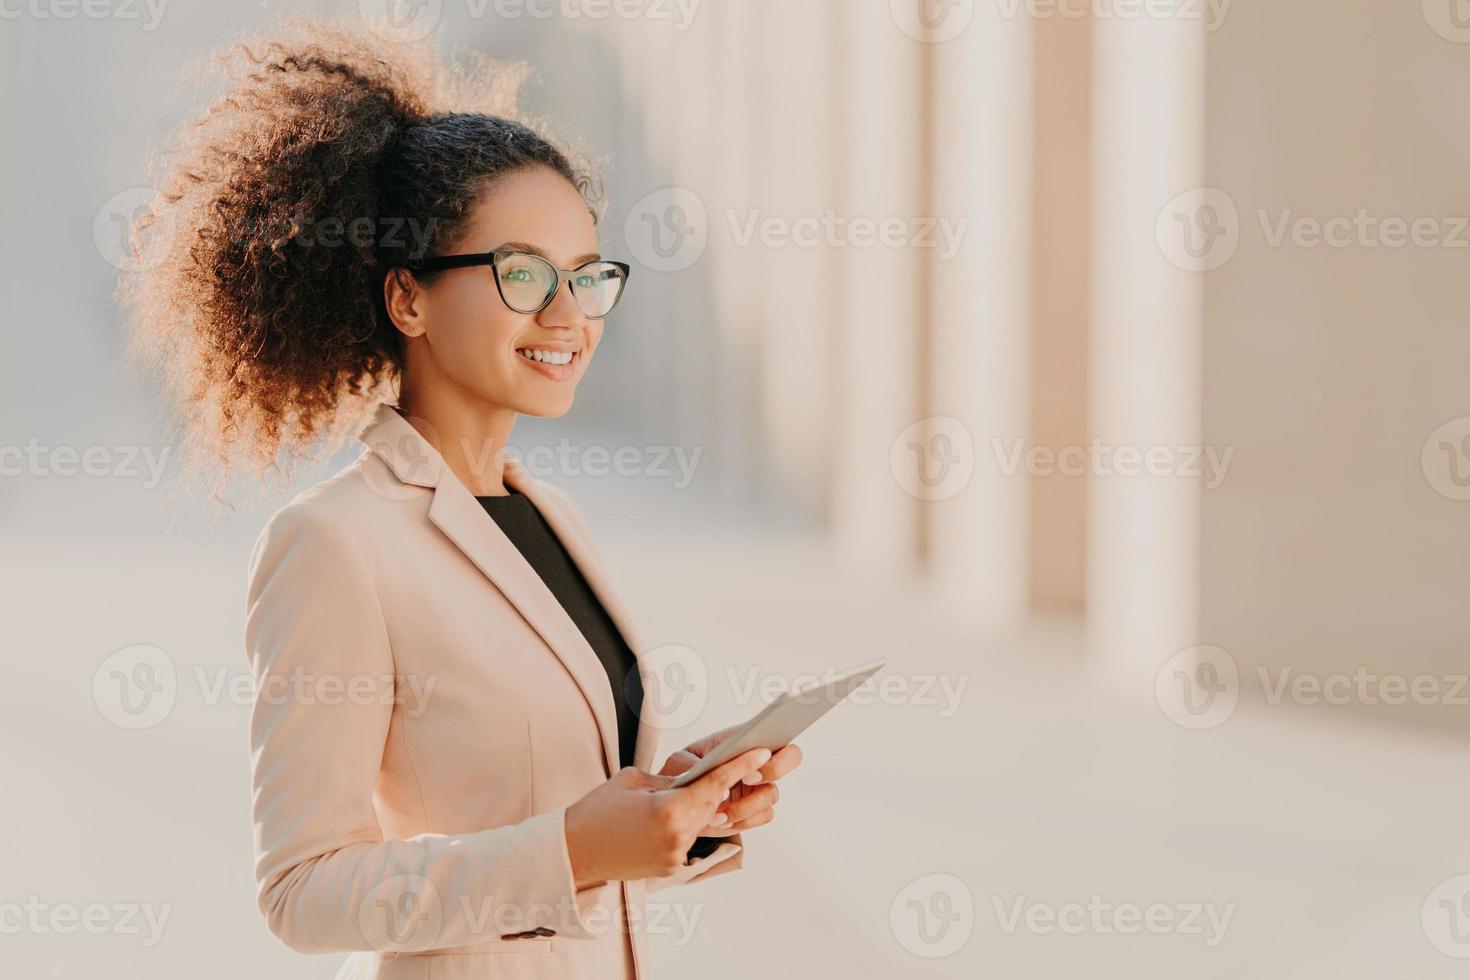 foto de perfil de una mujer alegre de piel oscura con cabello afro, vestida elegantemente sostiene una tableta en las manos pasea por la calle usa anteojos ópticos conectados a Internet de alta velocidad. estilo de vida, tecnología